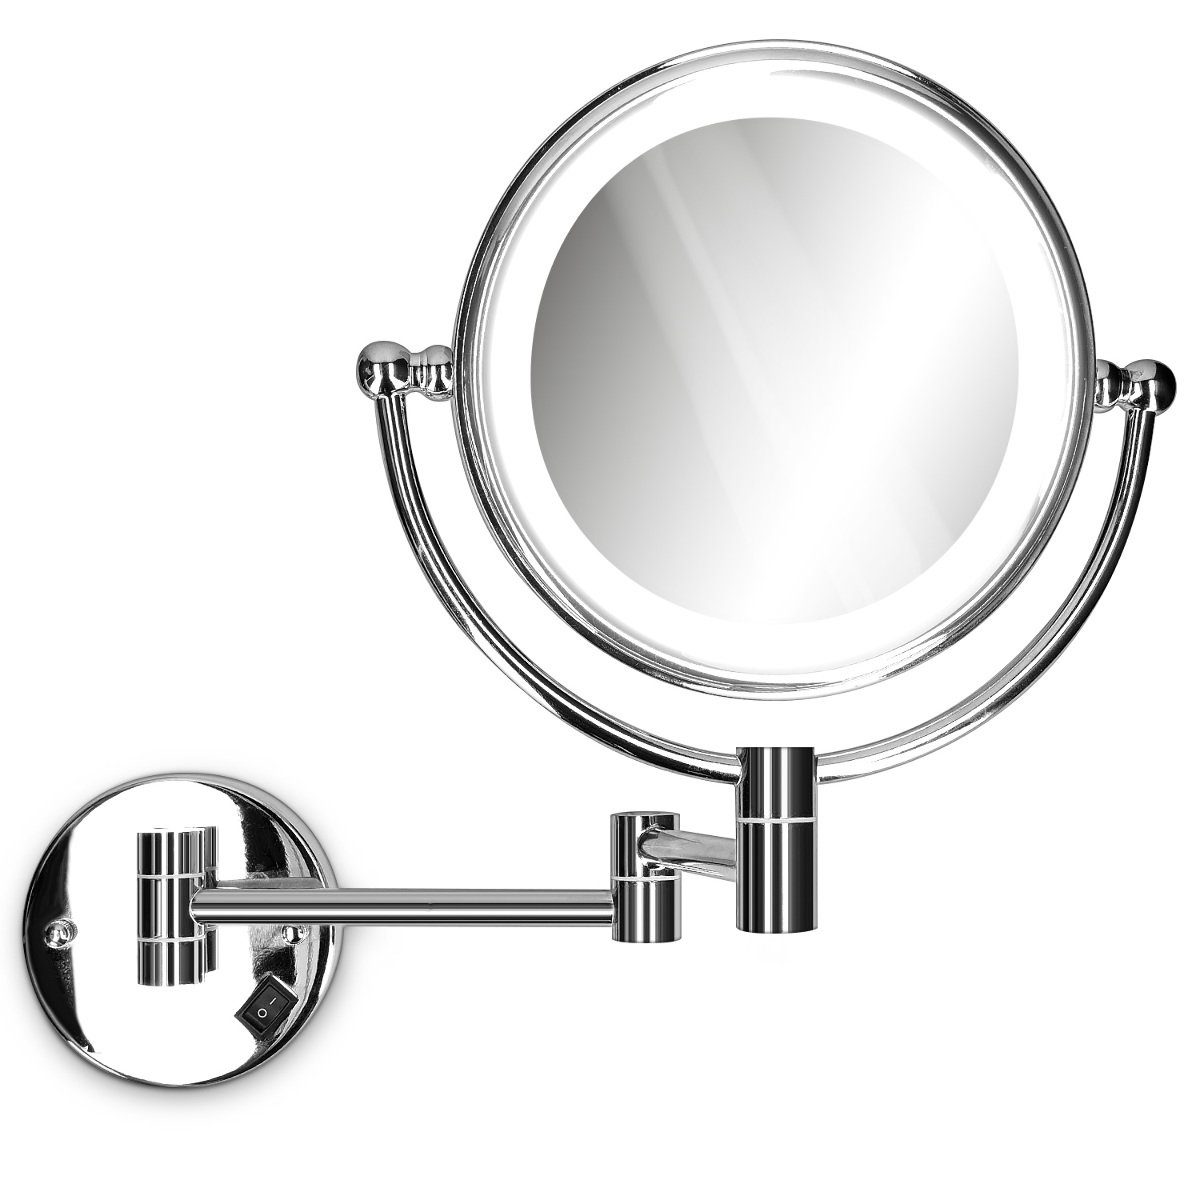 Navaris LED-Lichtspiegel, Vergrößerungsspiegel mit LED Beleuchtung  Wandmontage - Spiegel 5fach Vergrößerung Kosmetikspiegel 360° drehbar -  Rasierspiegel beleuchtet online kaufen | OTTO